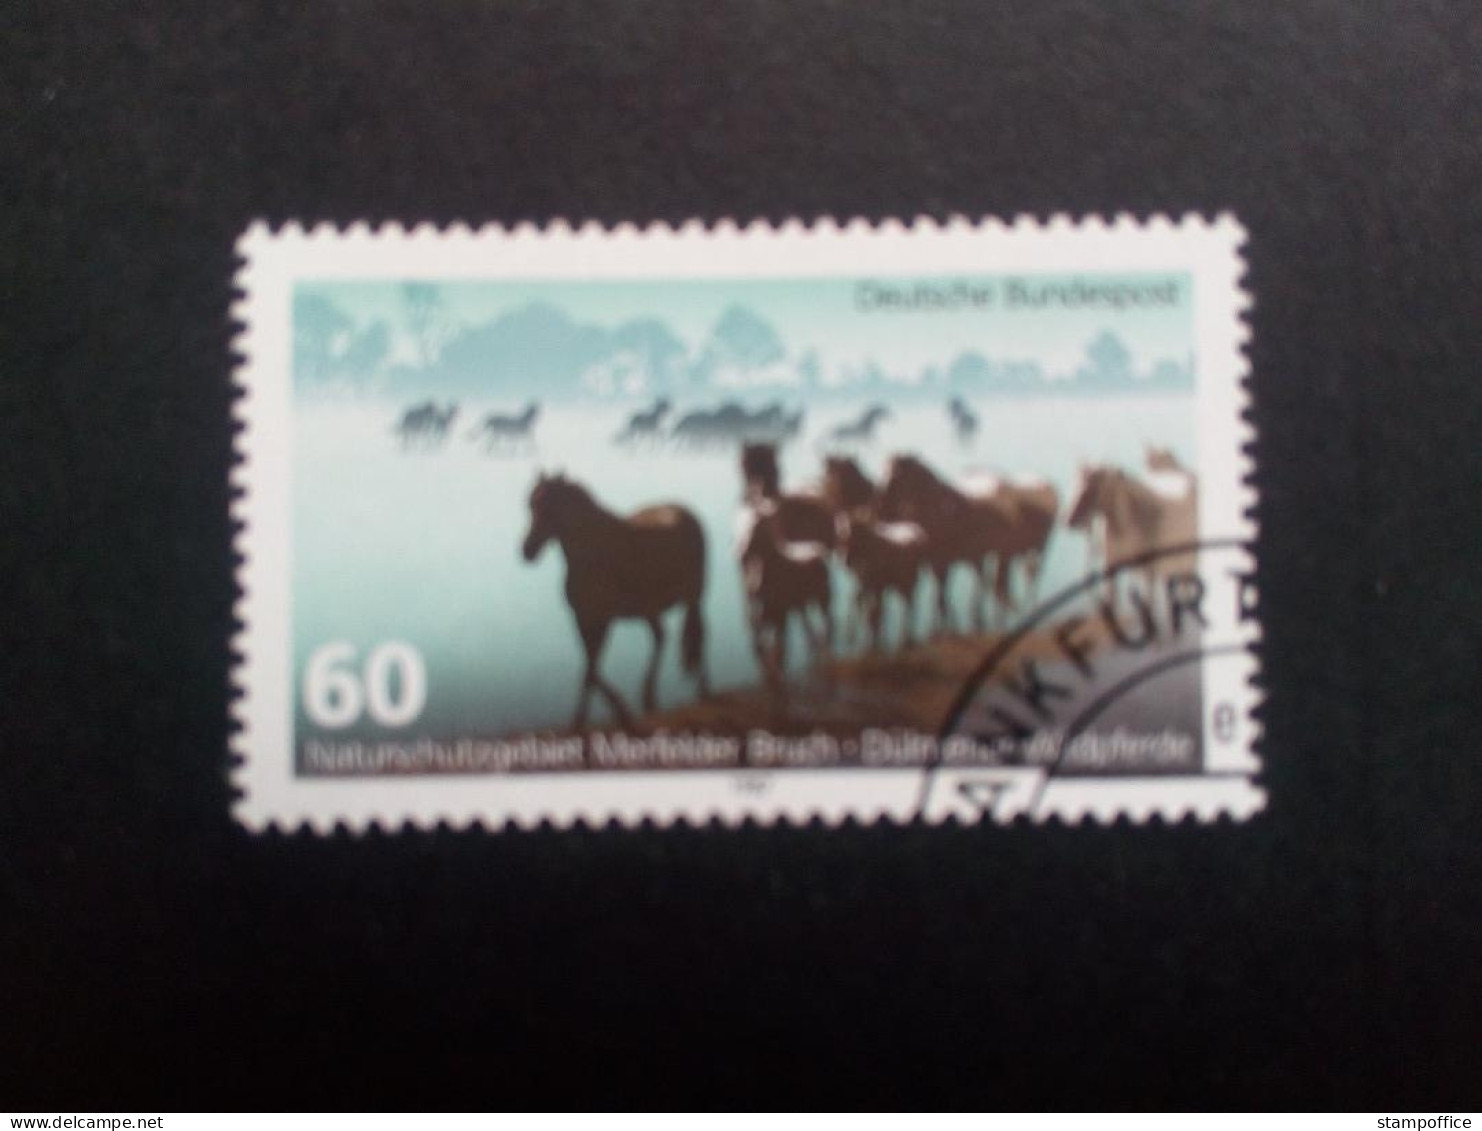 DEUTSCHLAND MI-NR. 1328 GESTEMPELT(USED) MITLÄUFER 1987 DÜLMENER WILDPFERDE NATUR- Und UMWELTSCHUTZ - Paarden